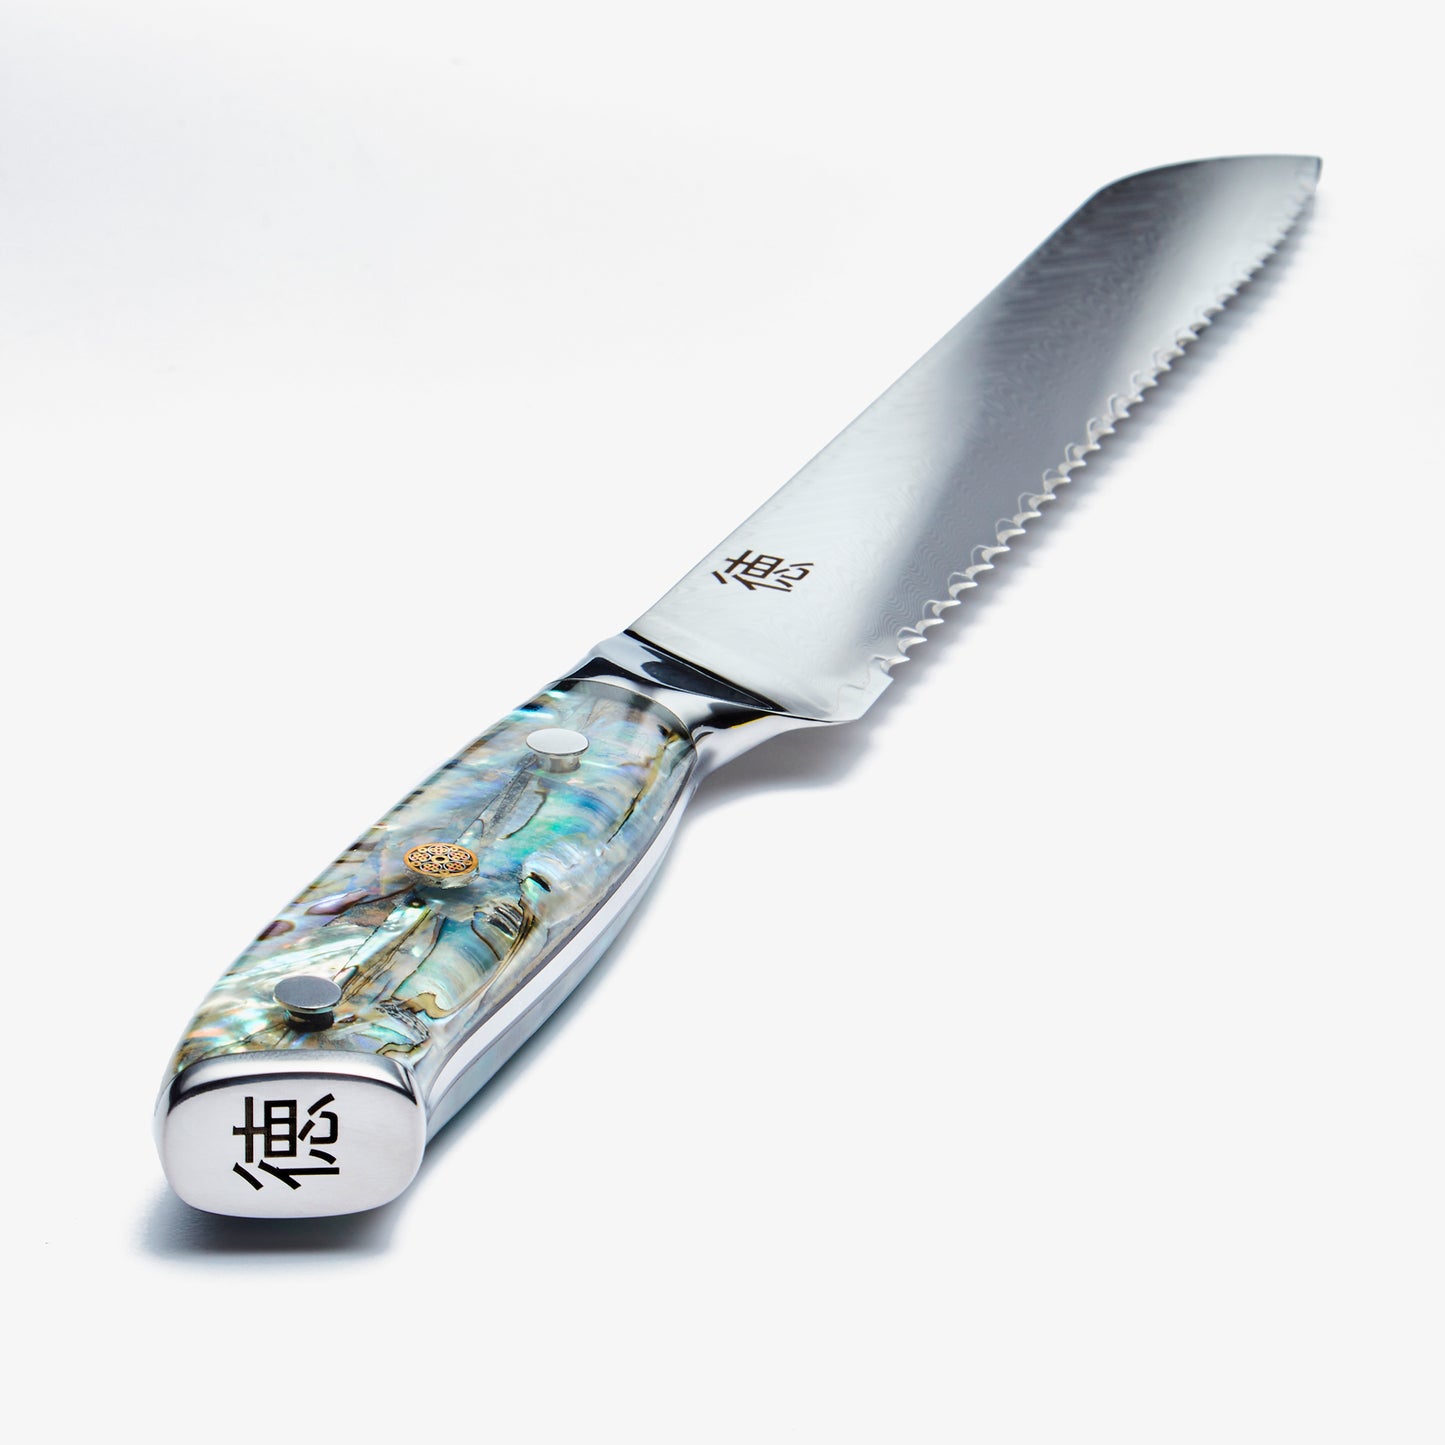 Chikashi (ちかし) 8 tum brödkniv